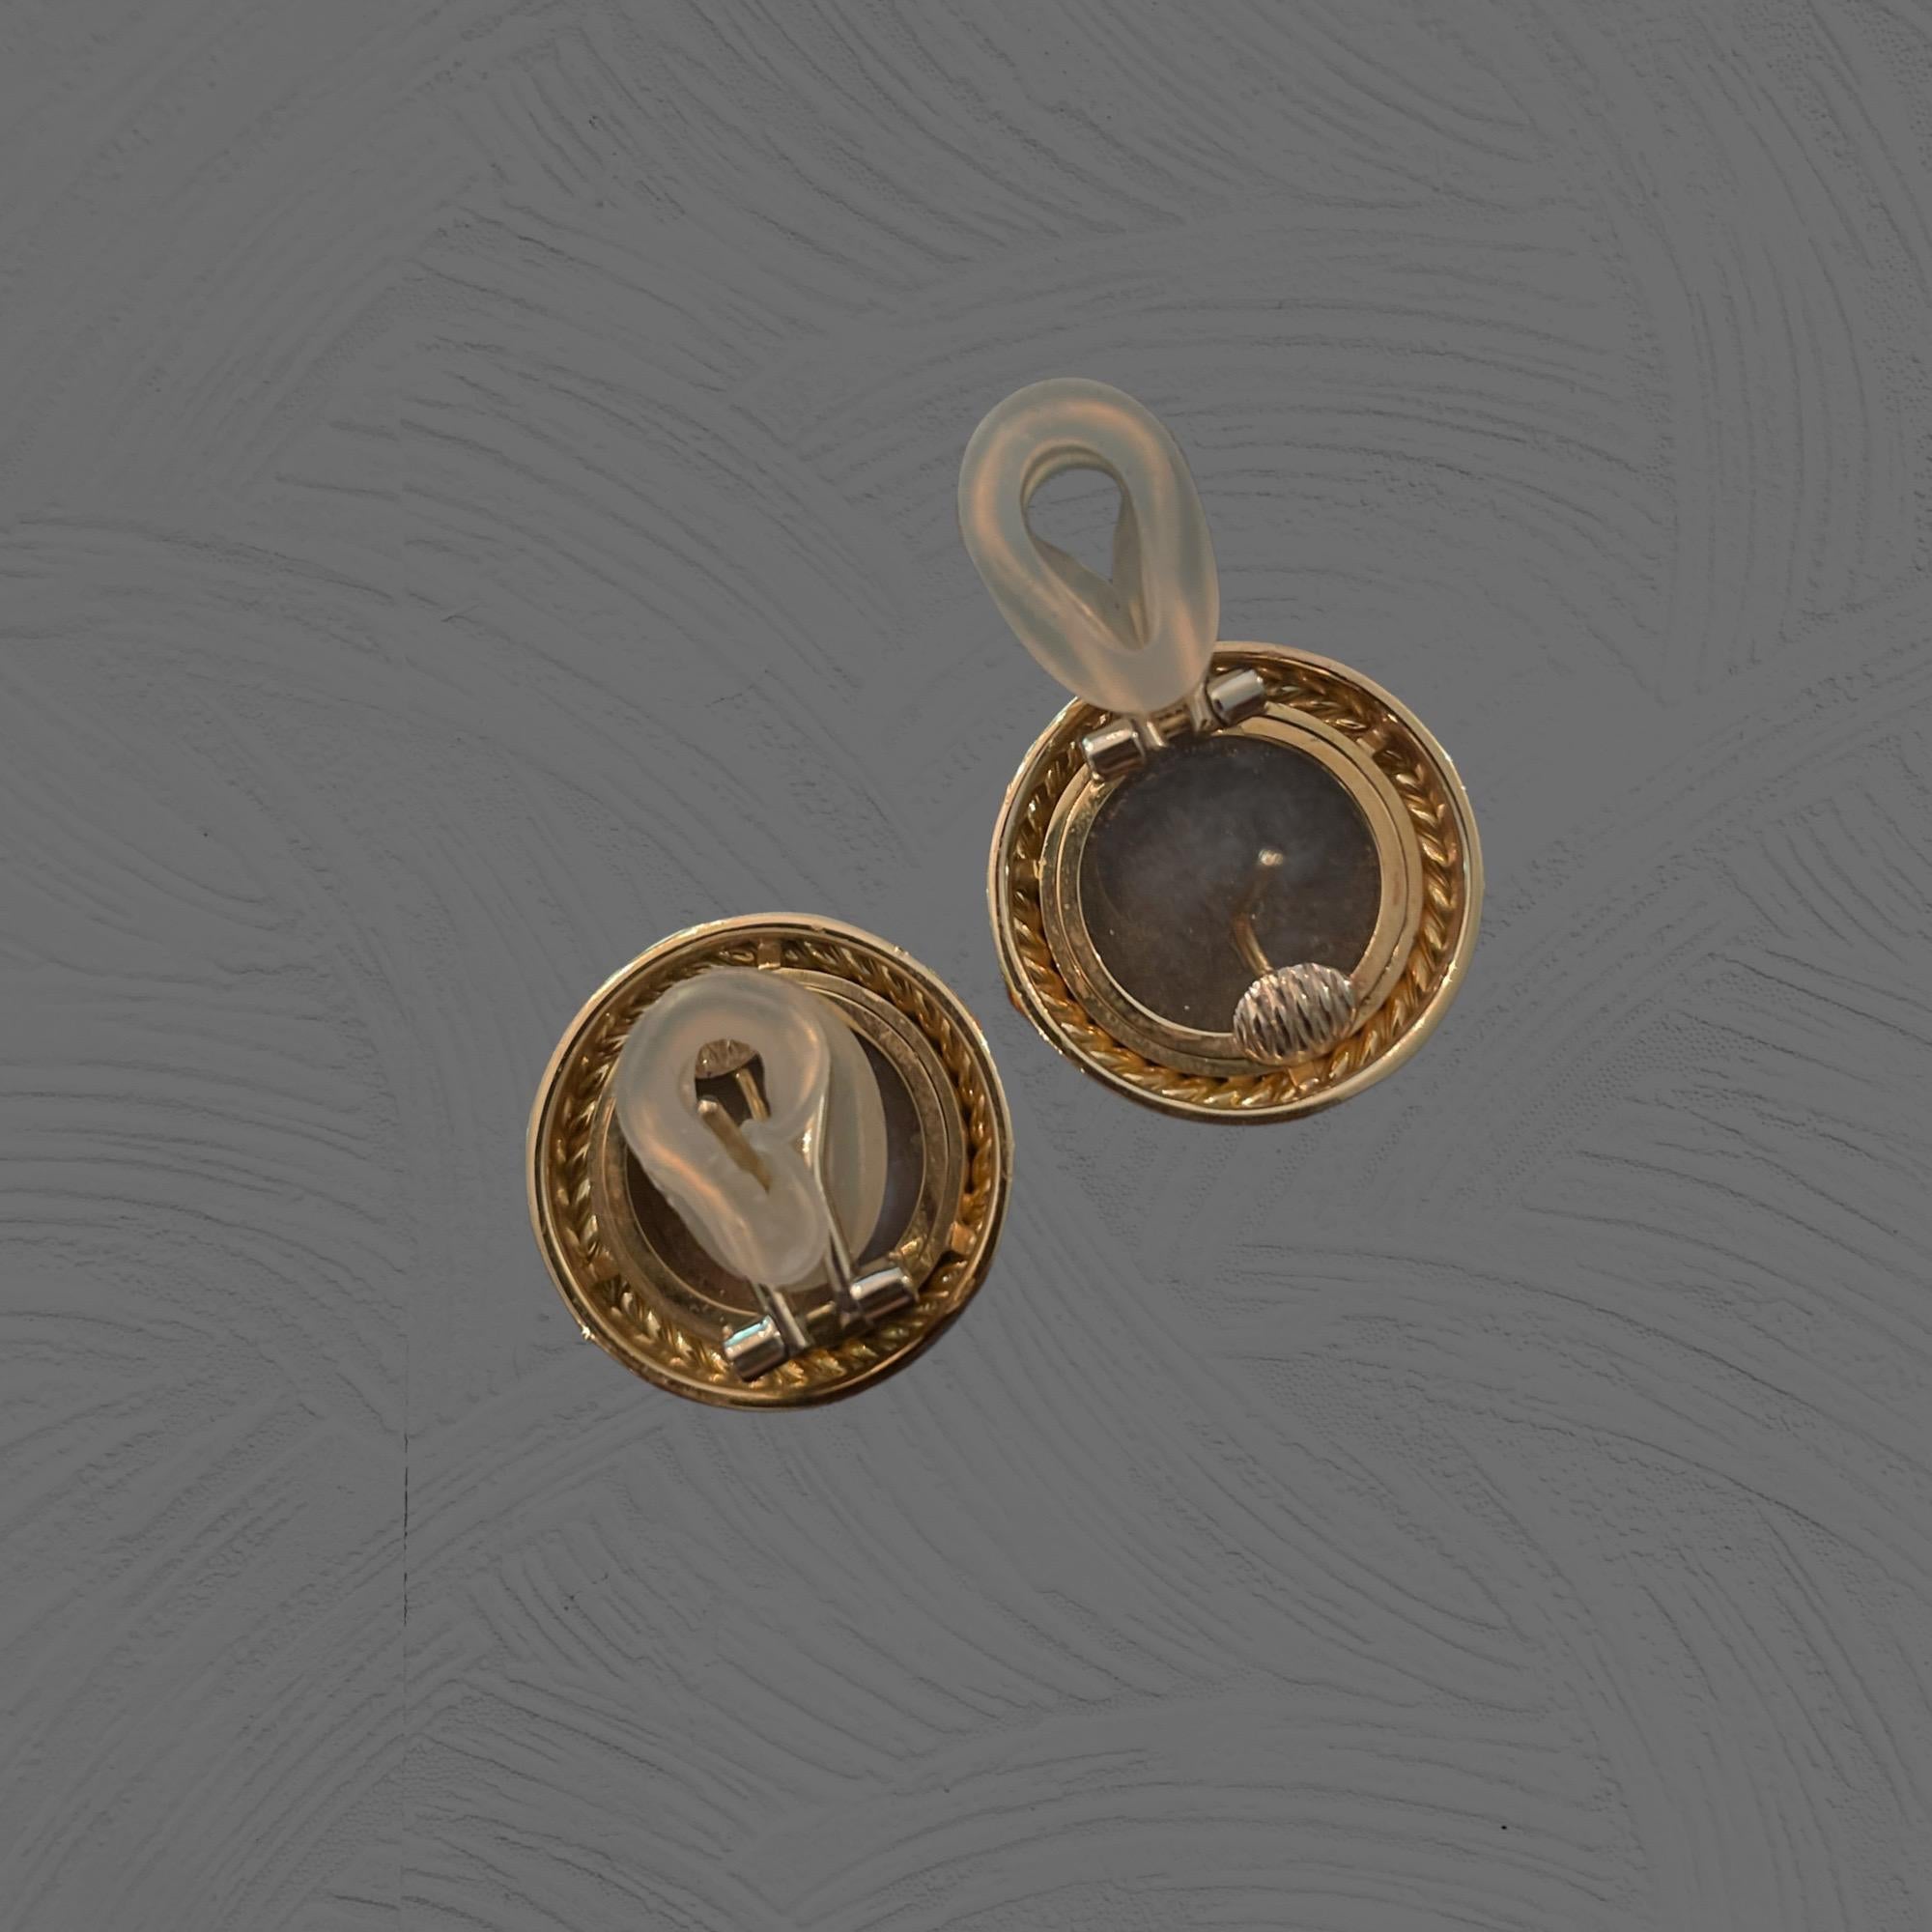 HK Fine Estate Jewels freut sich, Ihnen diese klassischen römischen Münzohrringe aus 18-karätigem Gelbgold mit sehr komfortablen Omega-Fassungen zu präsentieren. Die perfekten Ohrringe zu jedem Outfit.